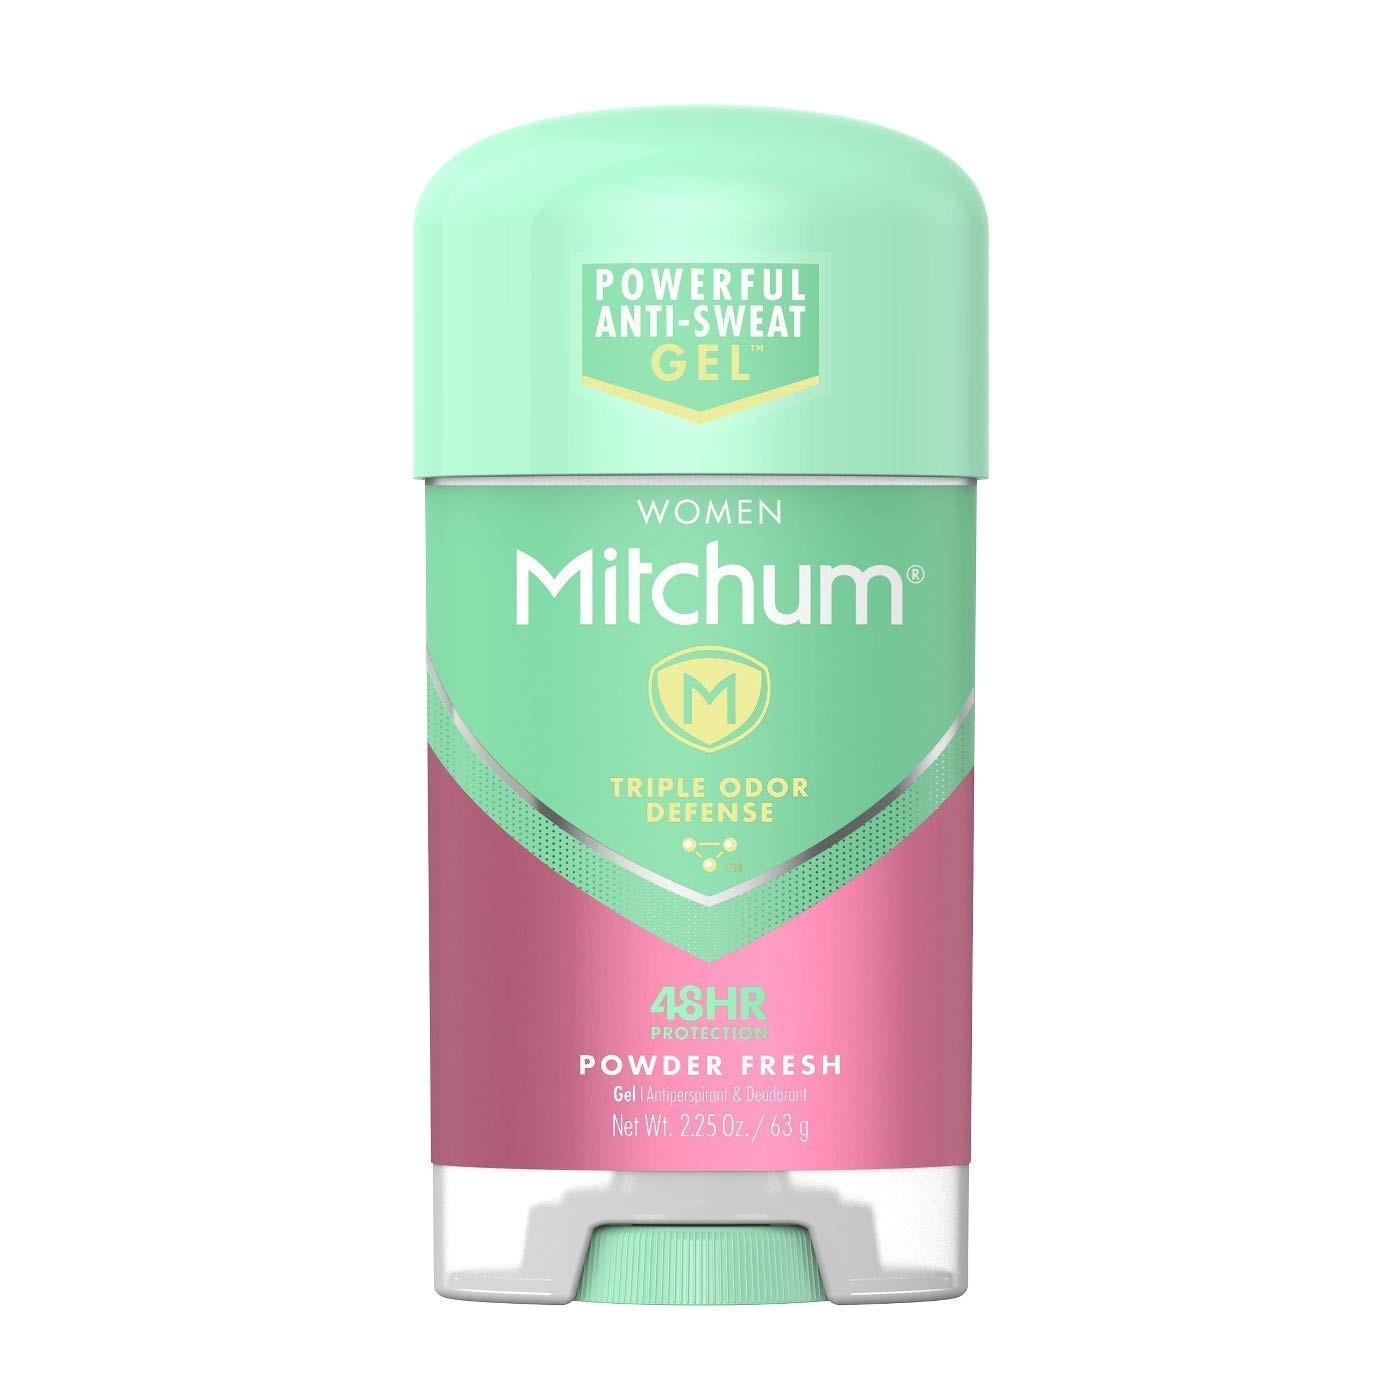 Mitchum for Women Advanced Gel Anti-Perspirant & Deodorant, Powder Fresh 2.25 oz (63 g)